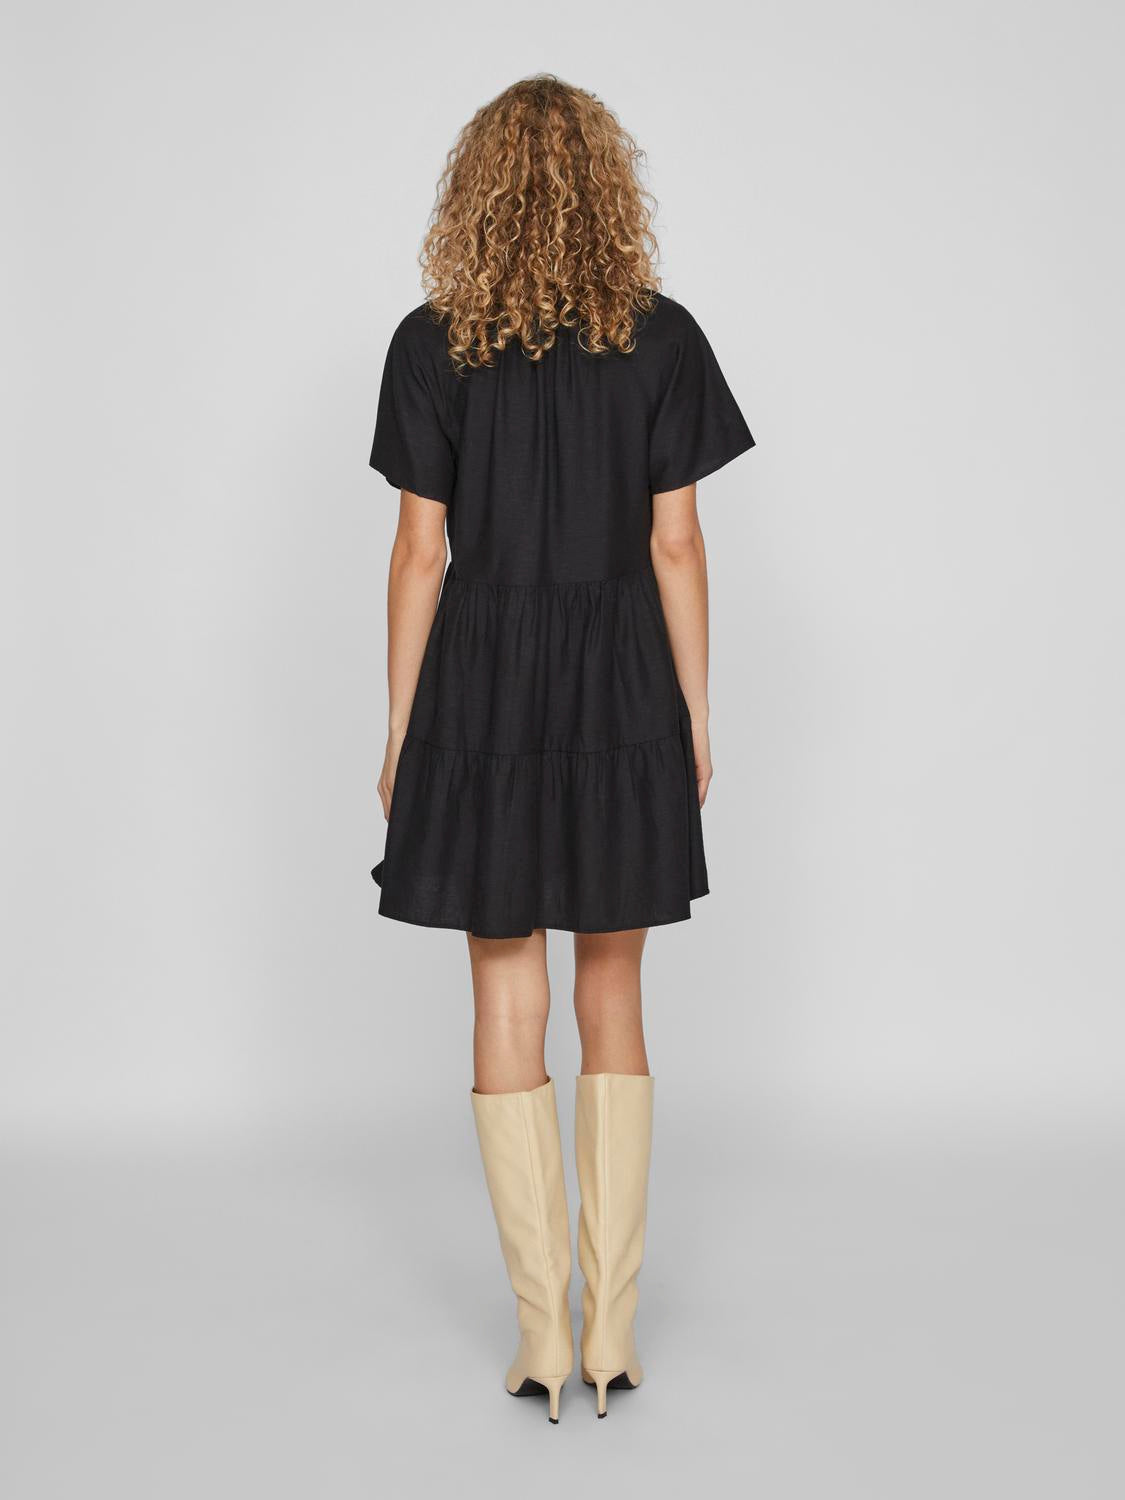 VIPRISILLA Dress - Black Beauty